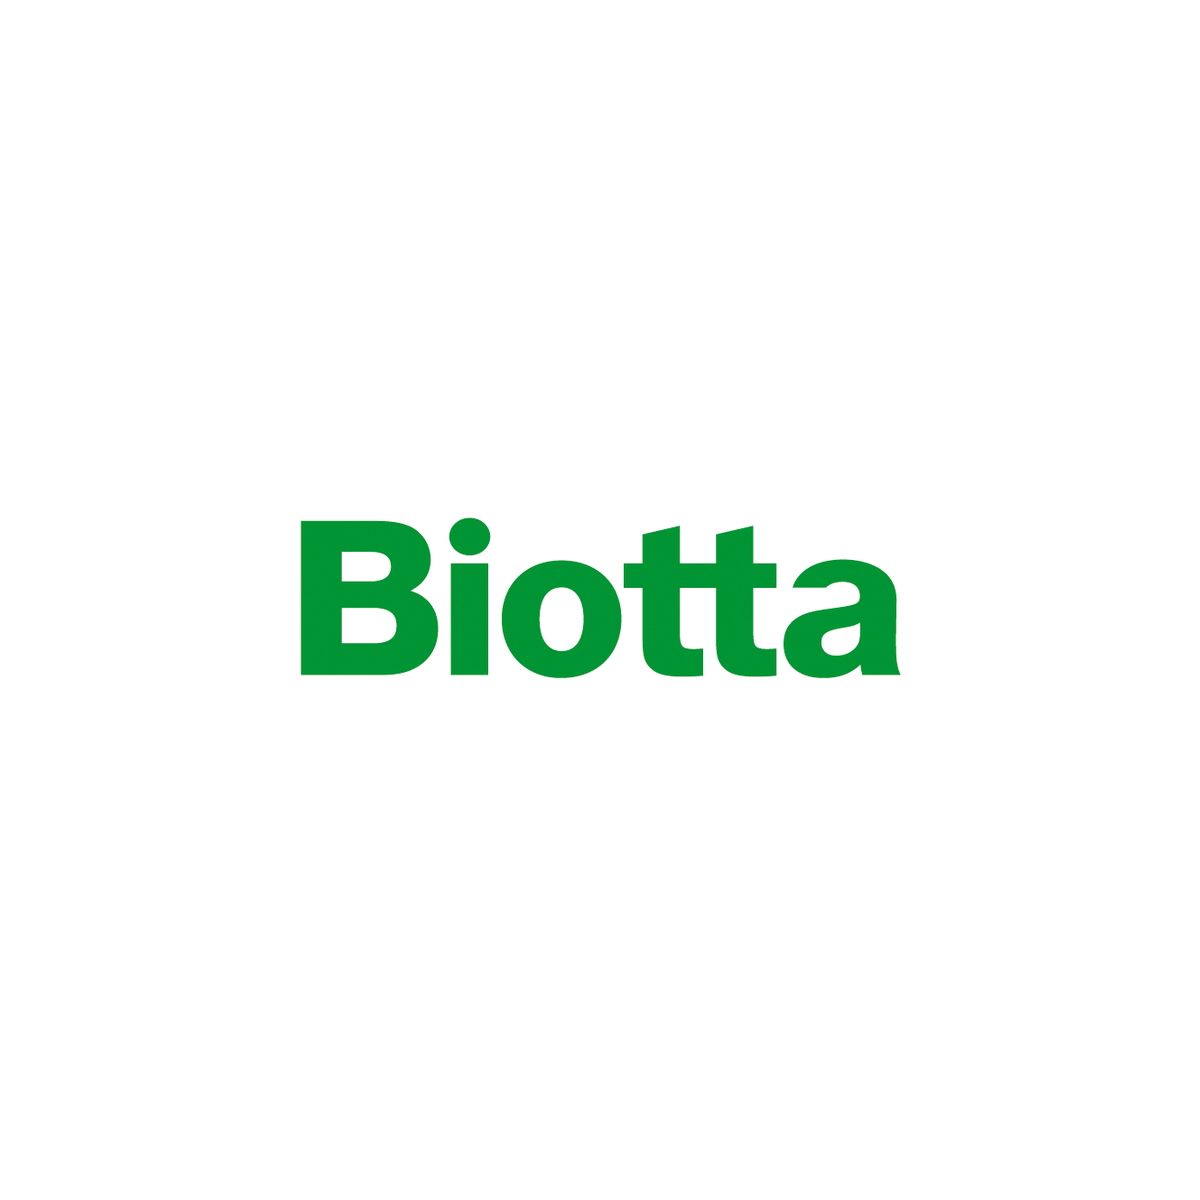  Biotta - Reine Pflanzenpower 

  Biotta steht...